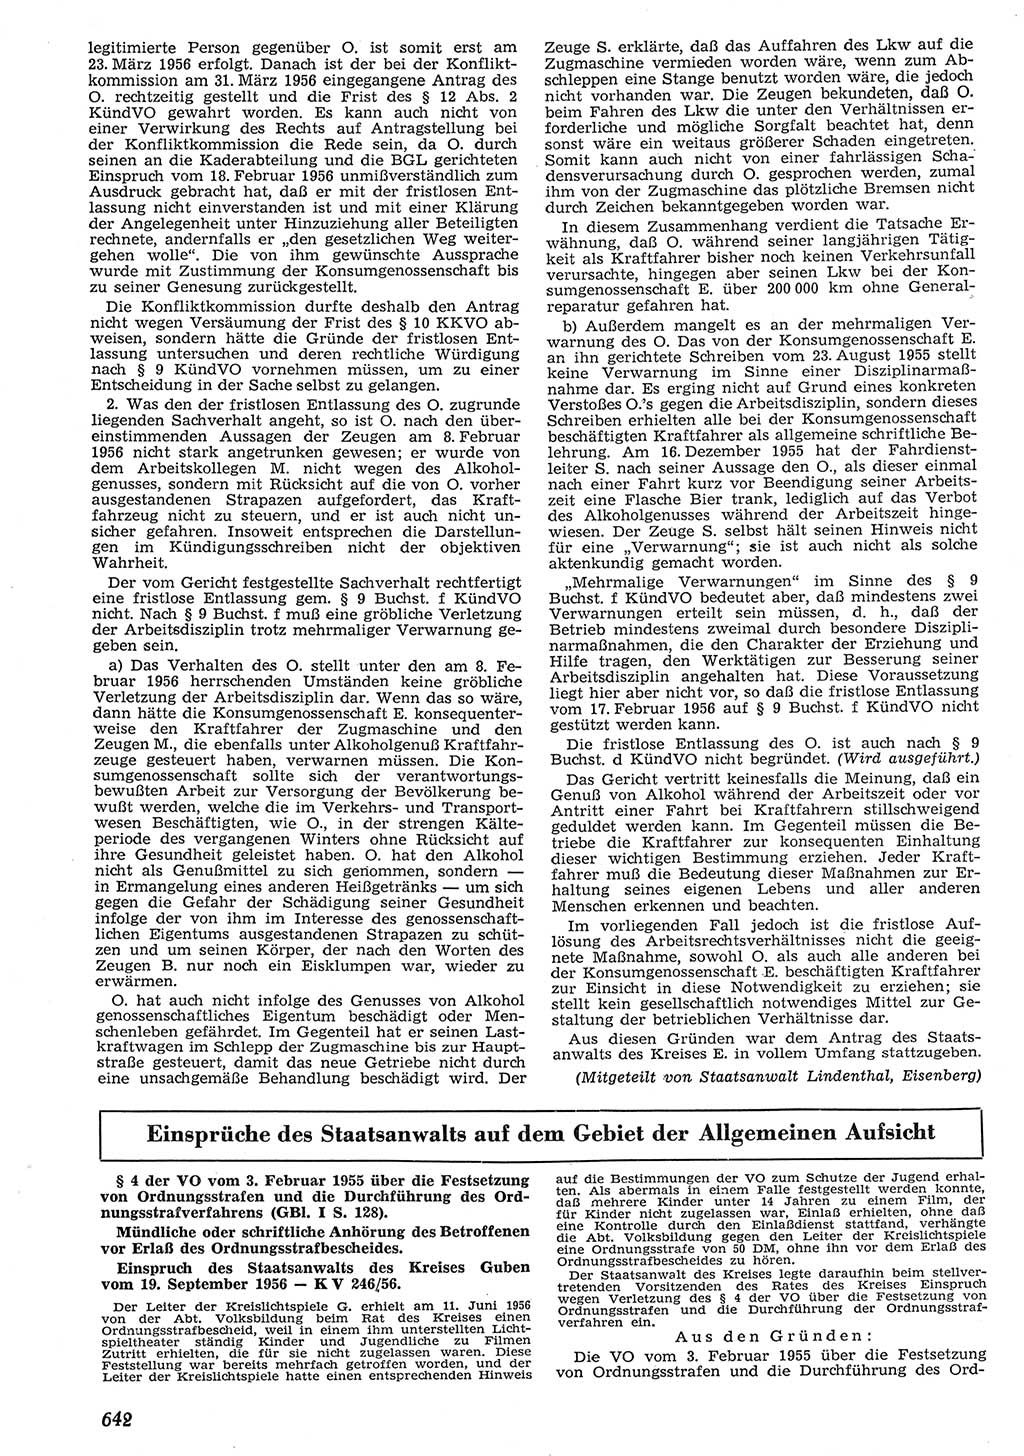 Neue Justiz (NJ), Zeitschrift für Recht und Rechtswissenschaft [Deutsche Demokratische Republik (DDR)], 10. Jahrgang 1956, Seite 642 (NJ DDR 1956, S. 642)